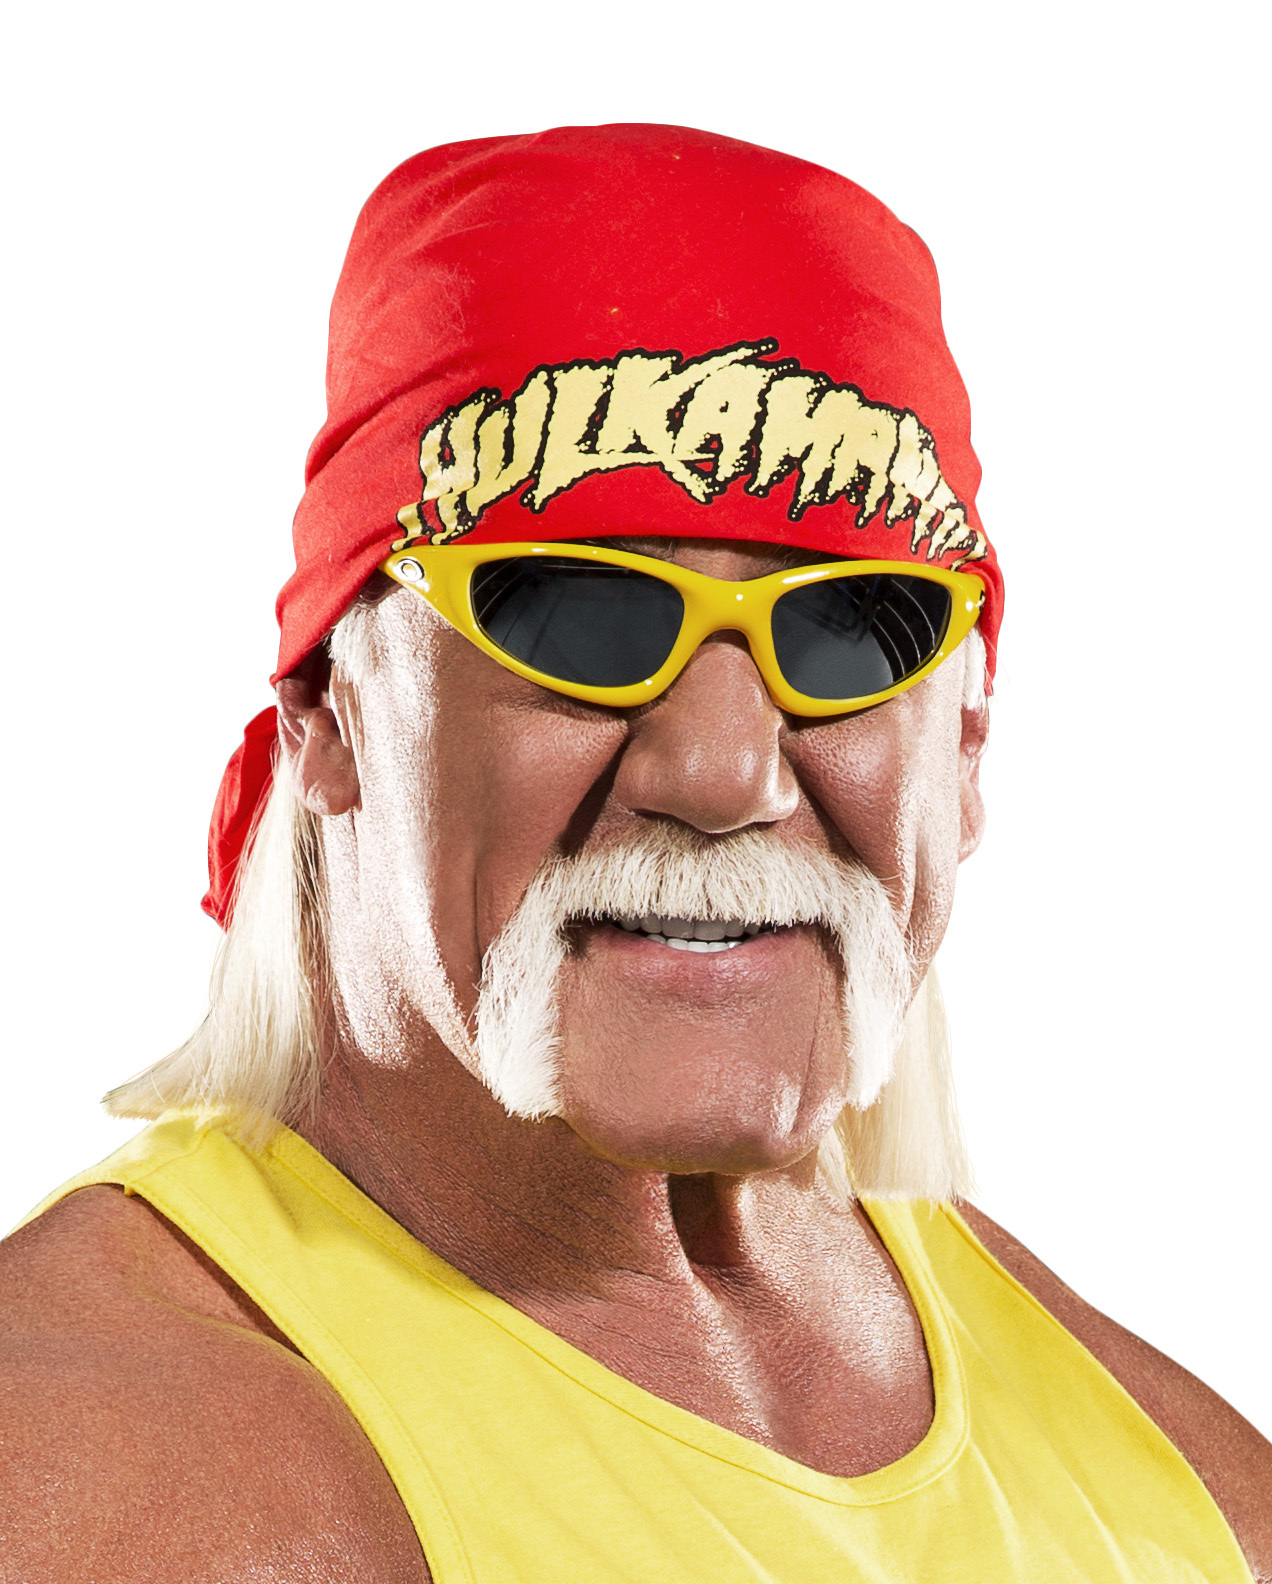 Hulk Hogan ®, Chris Jericho ®